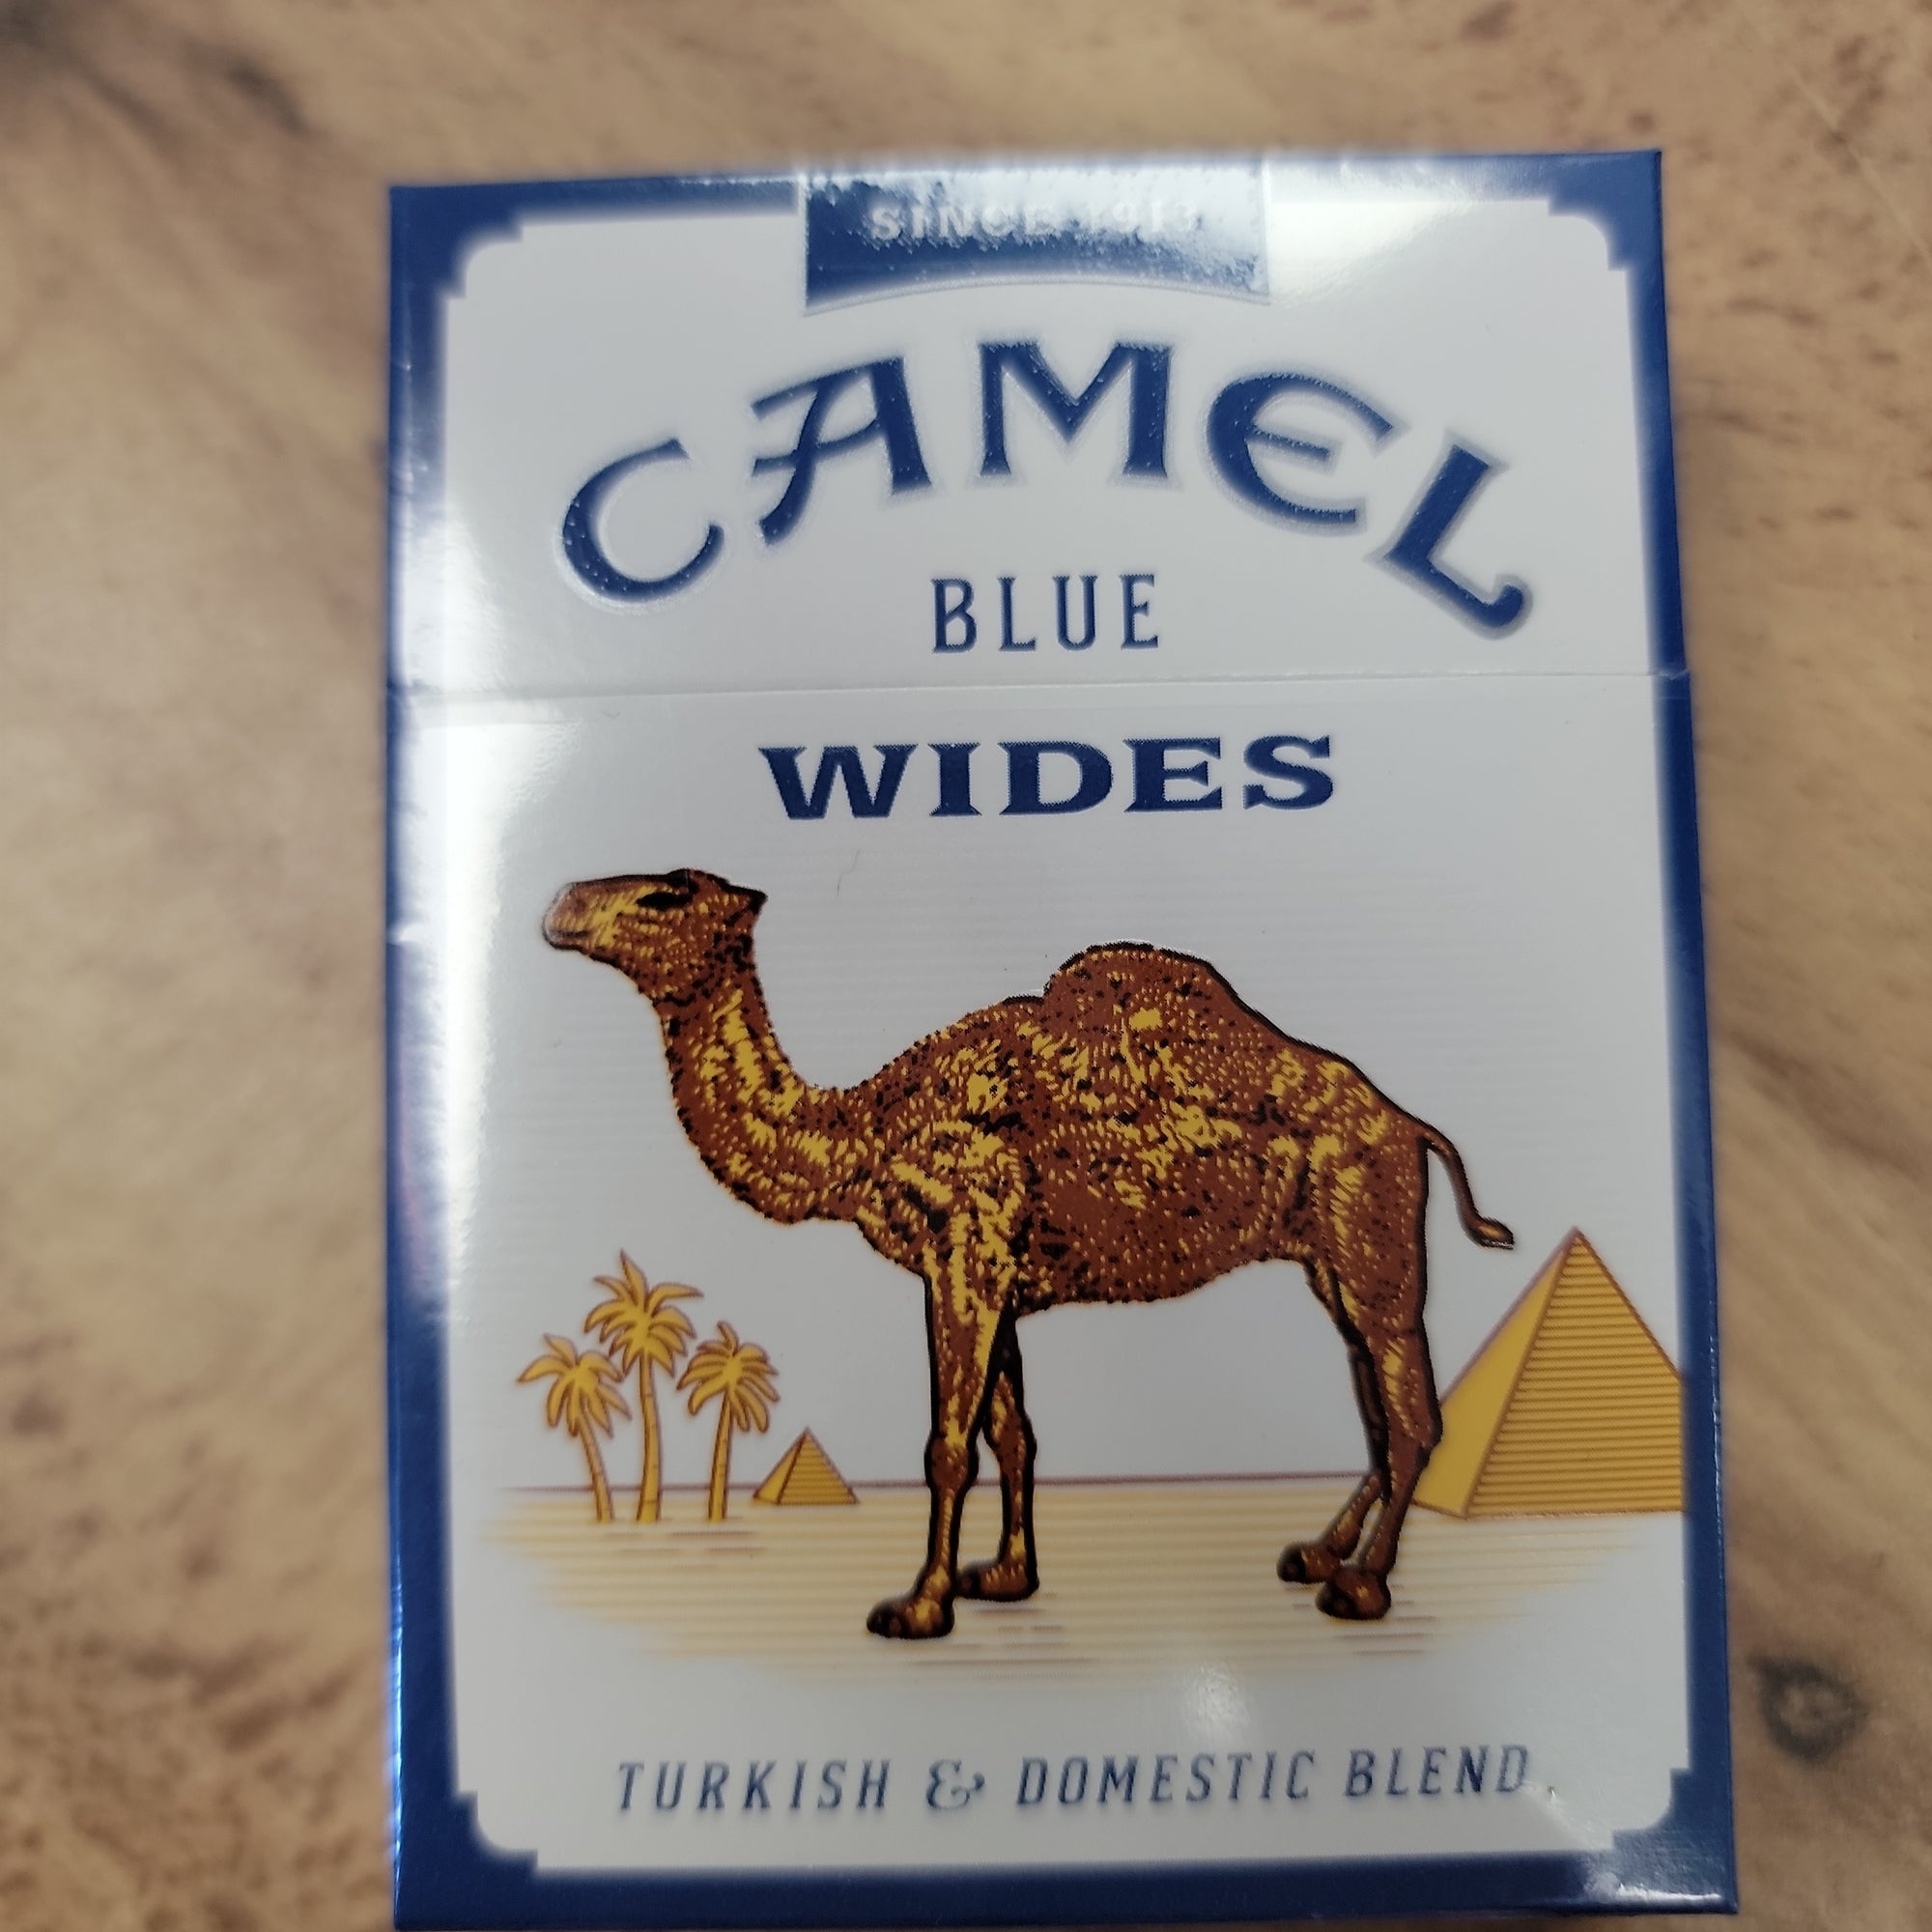 Camel blue wides